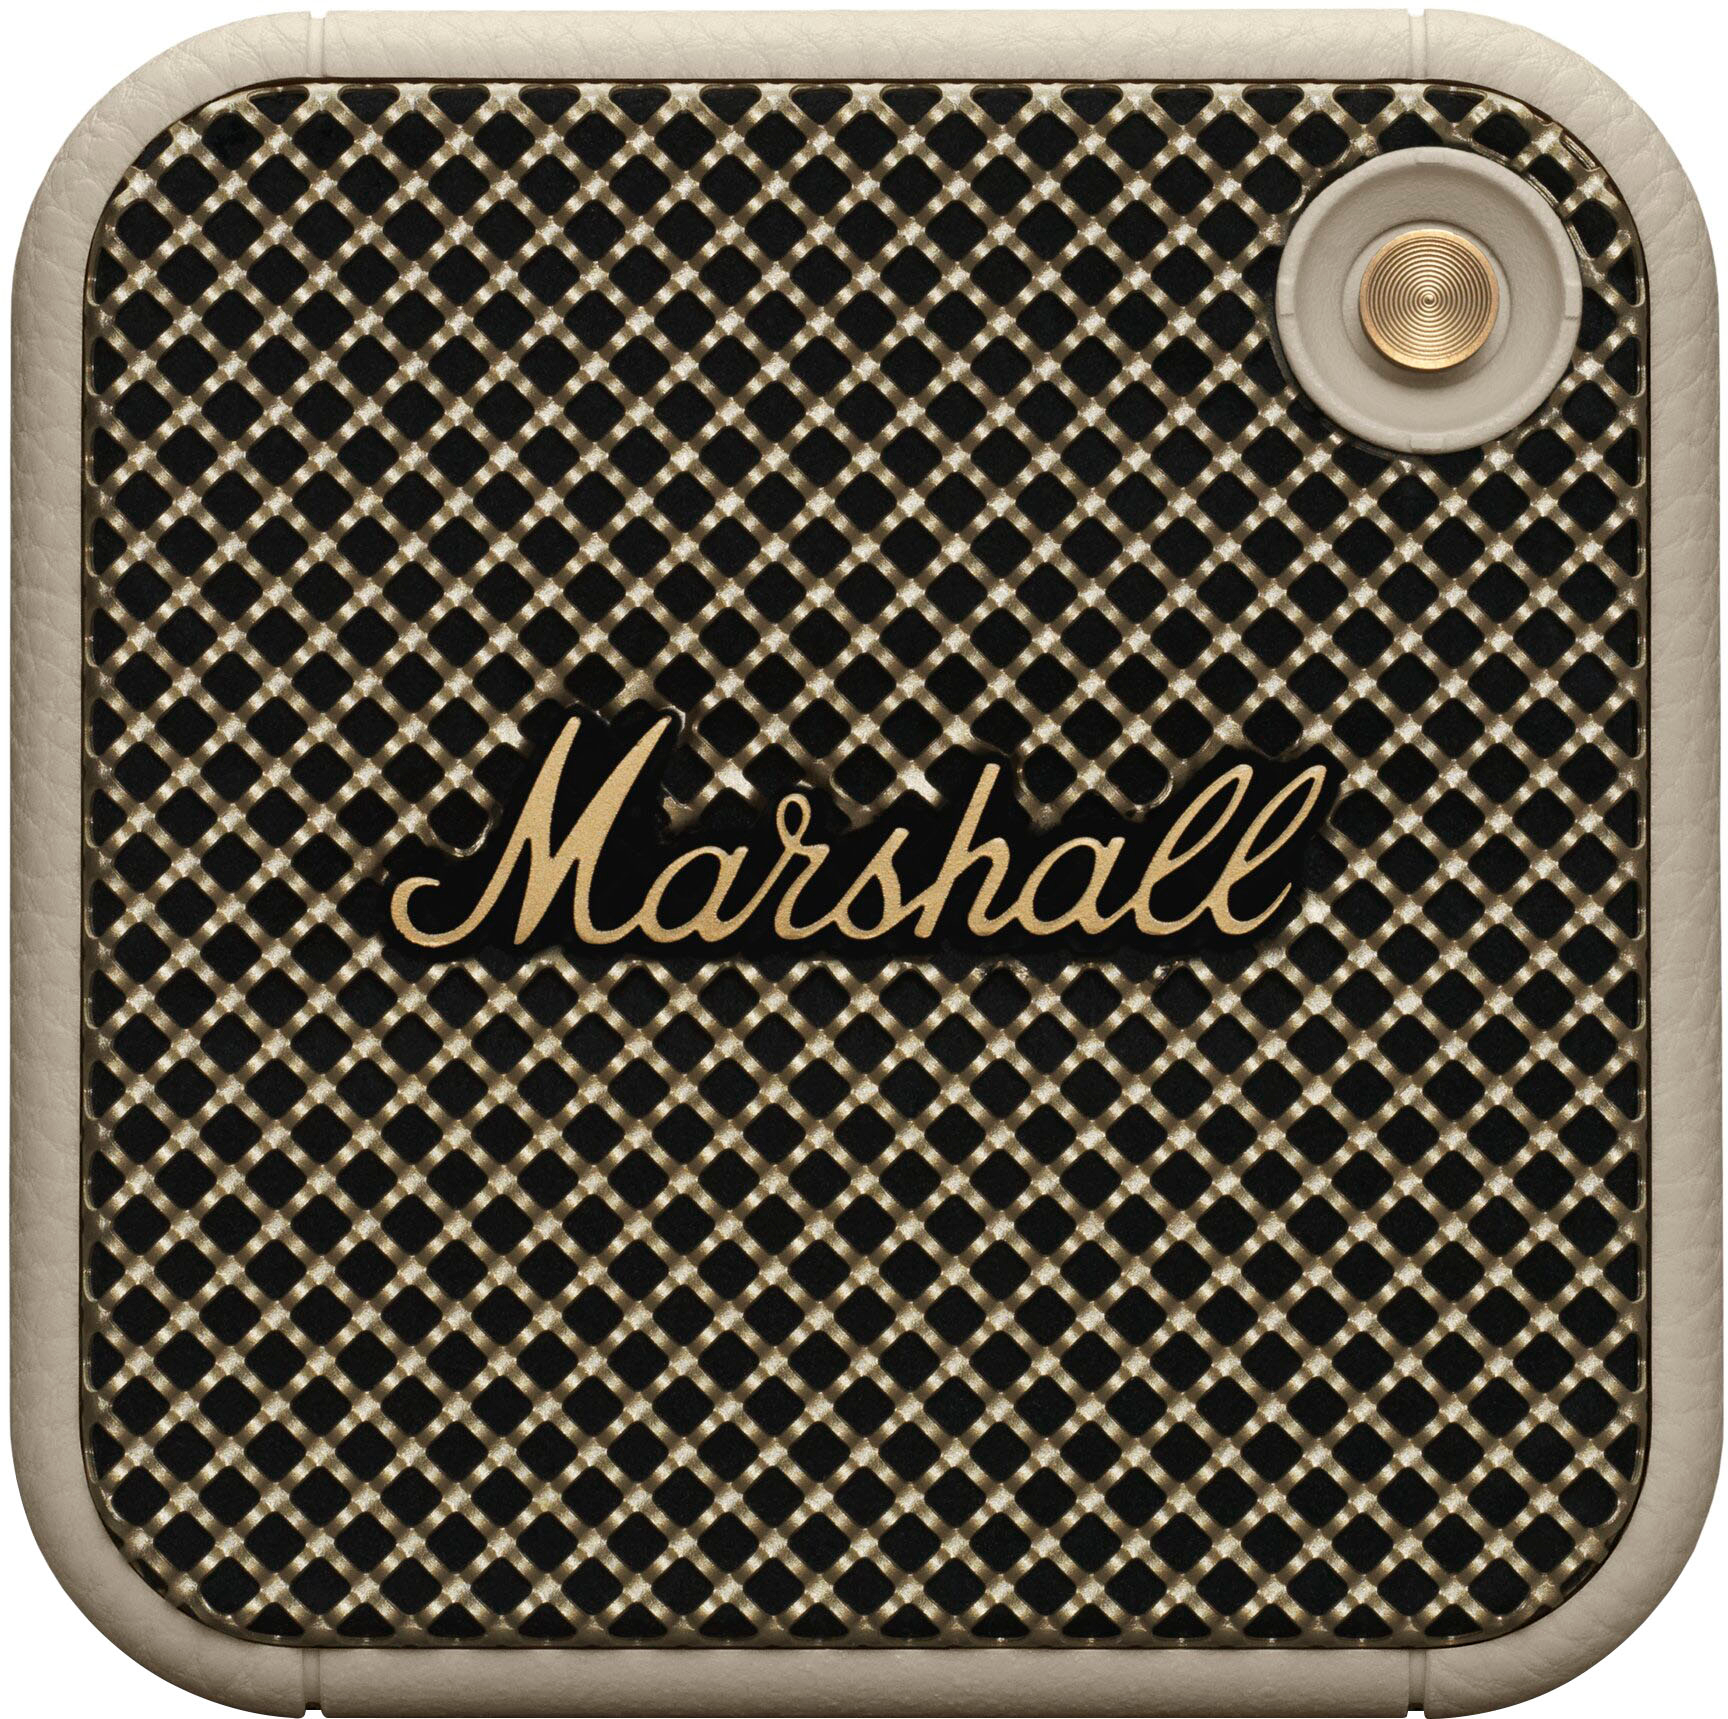 Portable Speaker Bag for Marshall Willen Bluetooth Speaker Sound